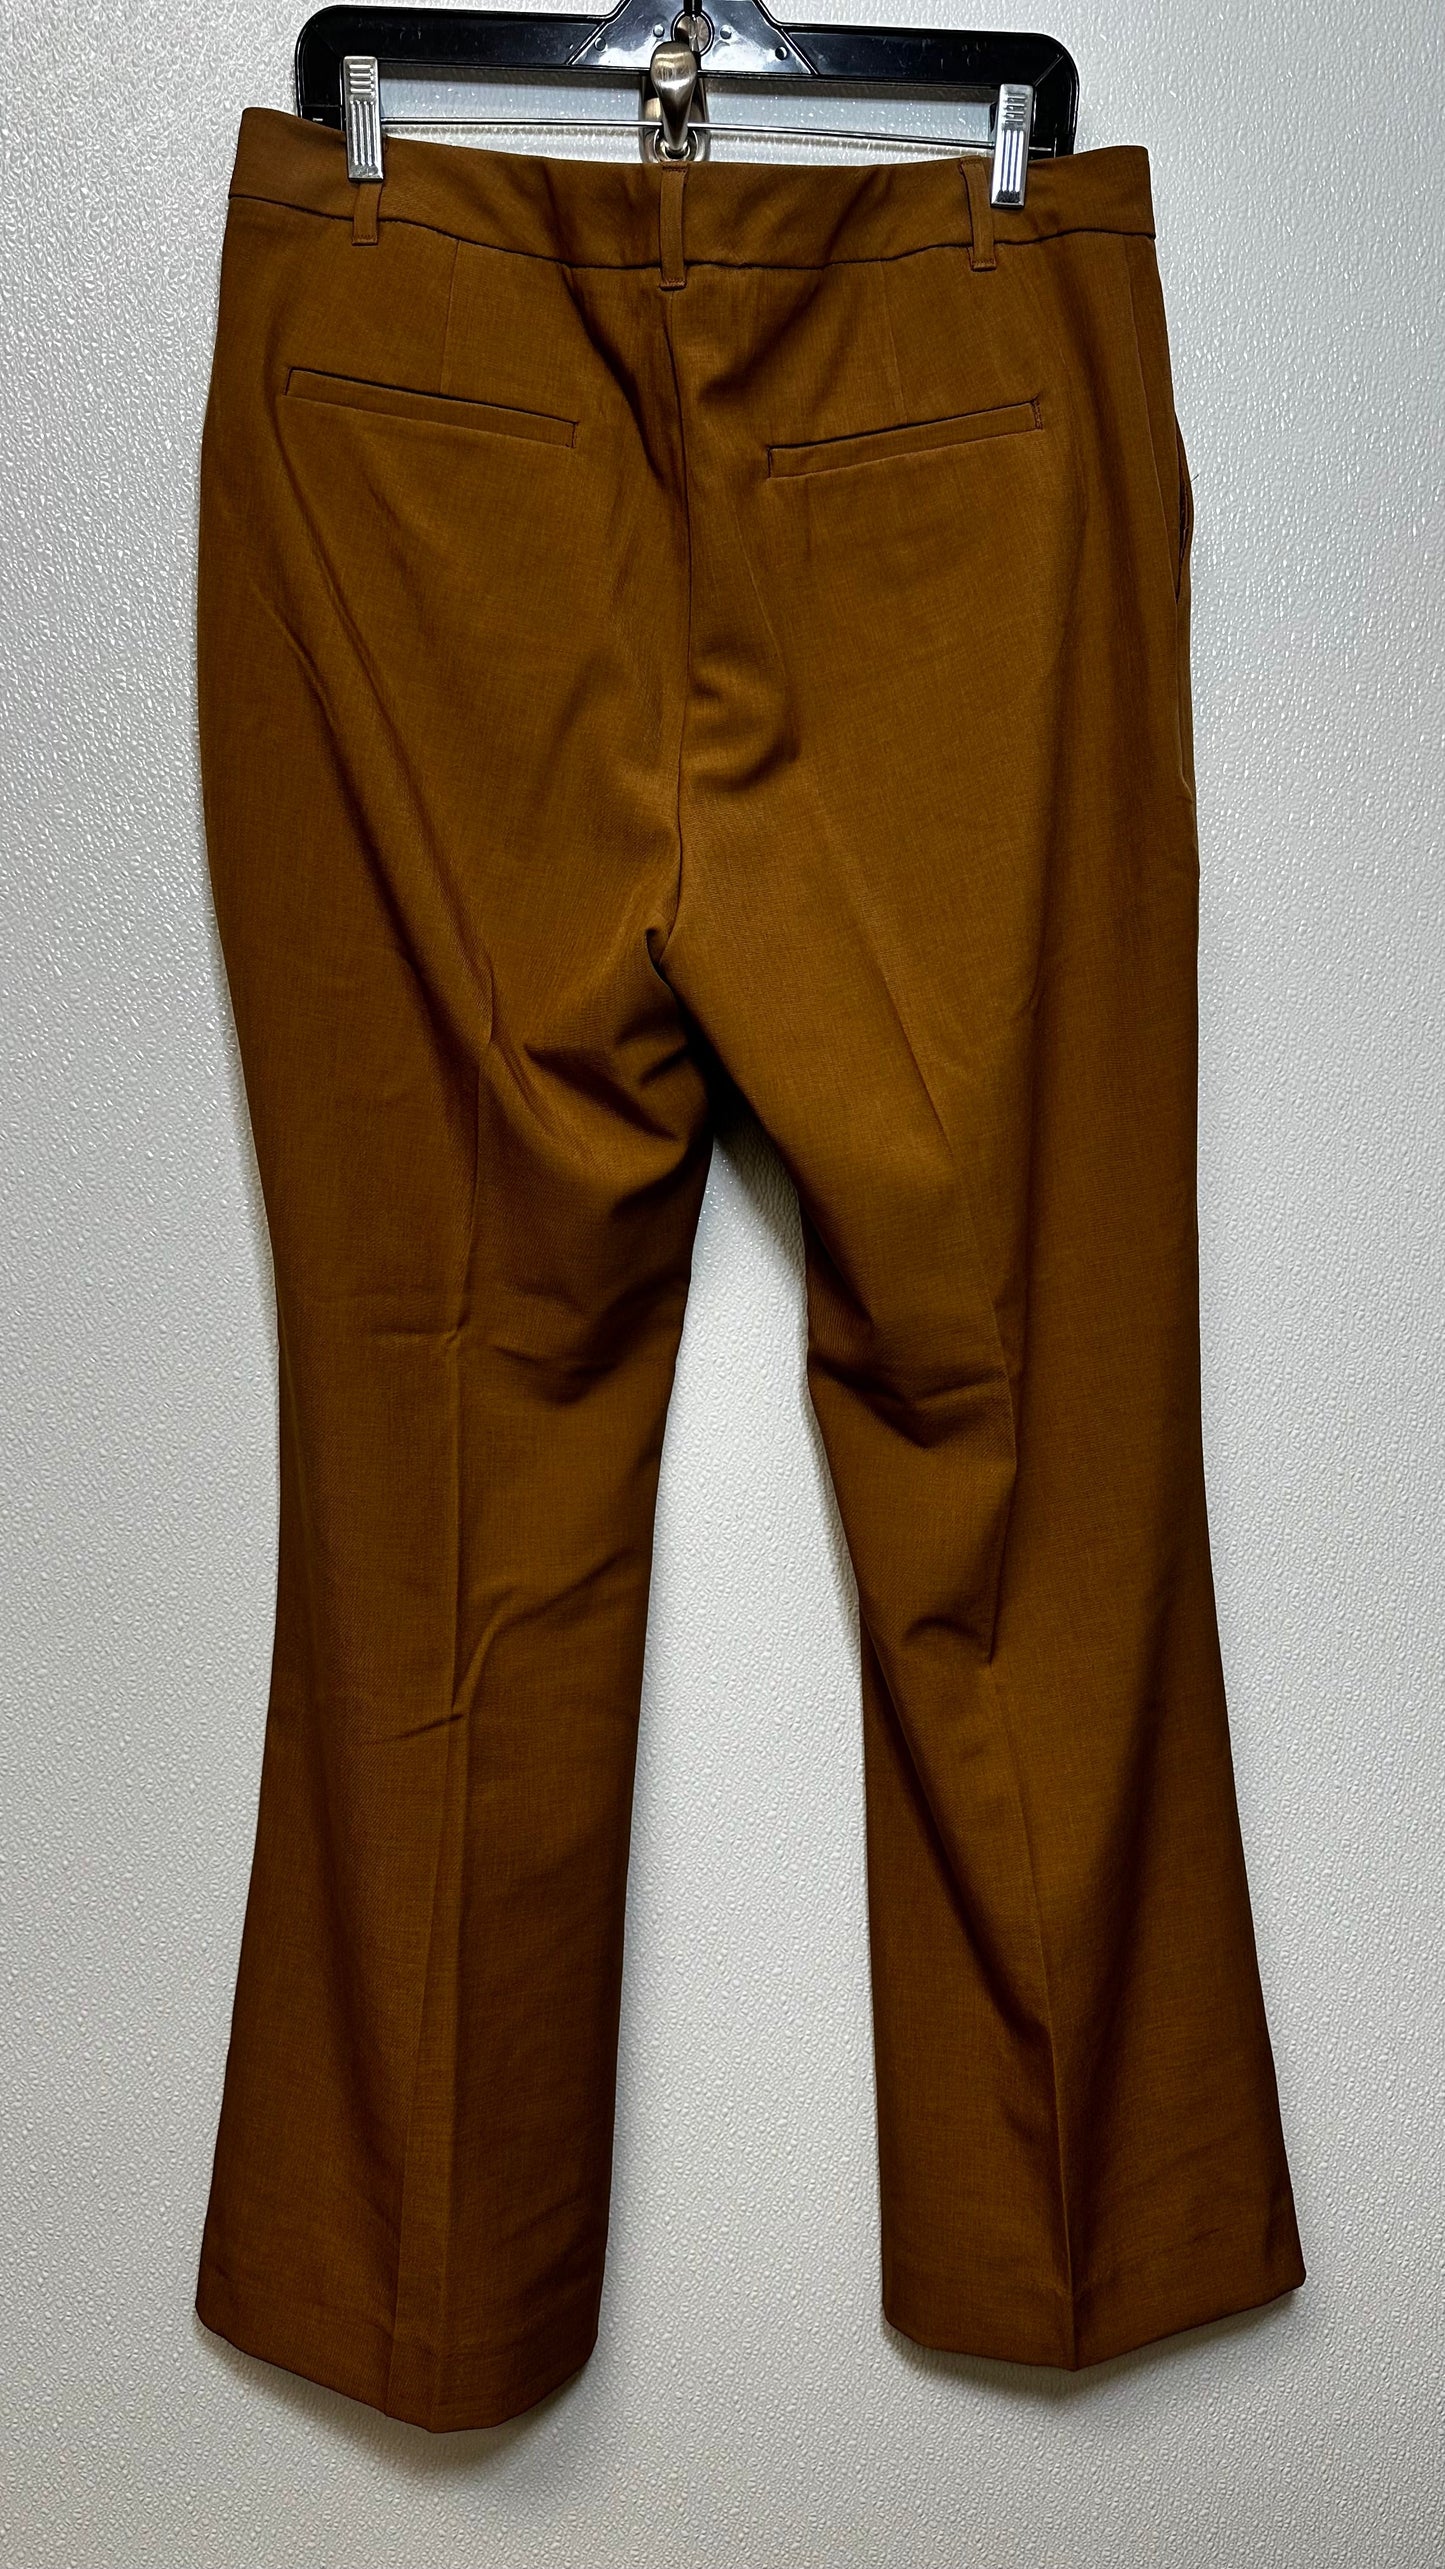 Tan Pants Work/dress Banana Republic O, Size 14 P